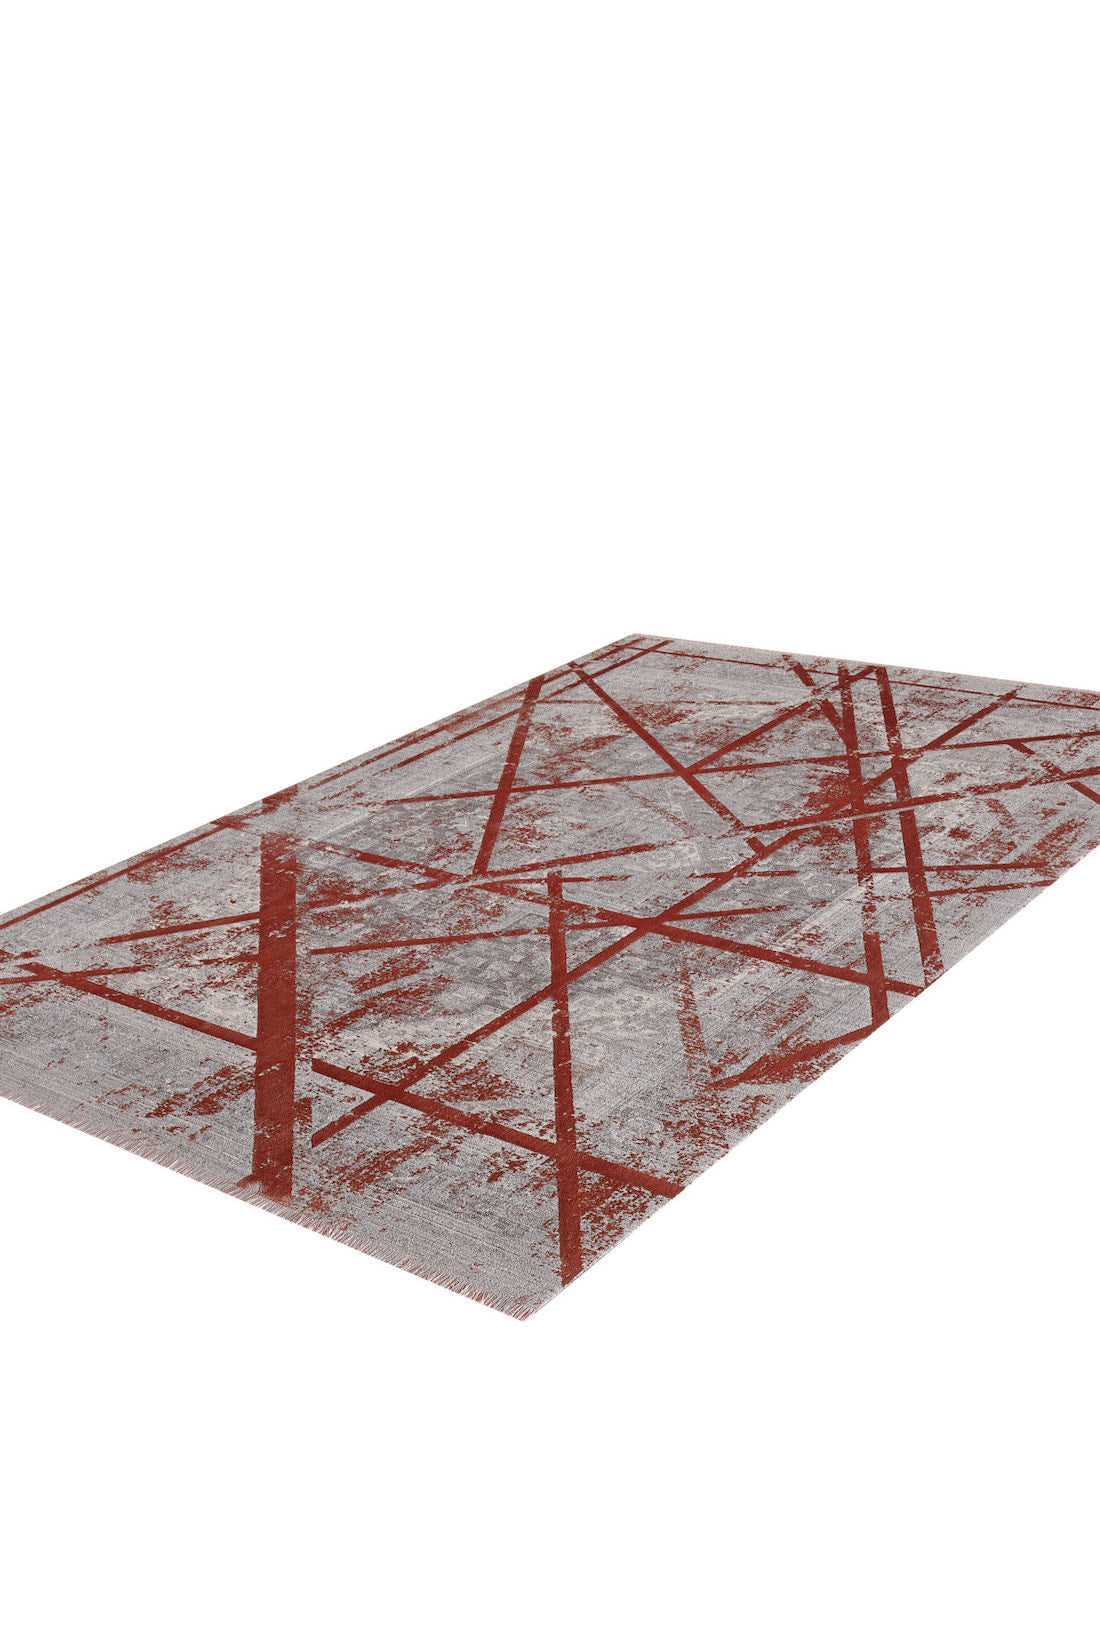 Dominant Lineage Moderner Teppich – Koralle – HRD003 